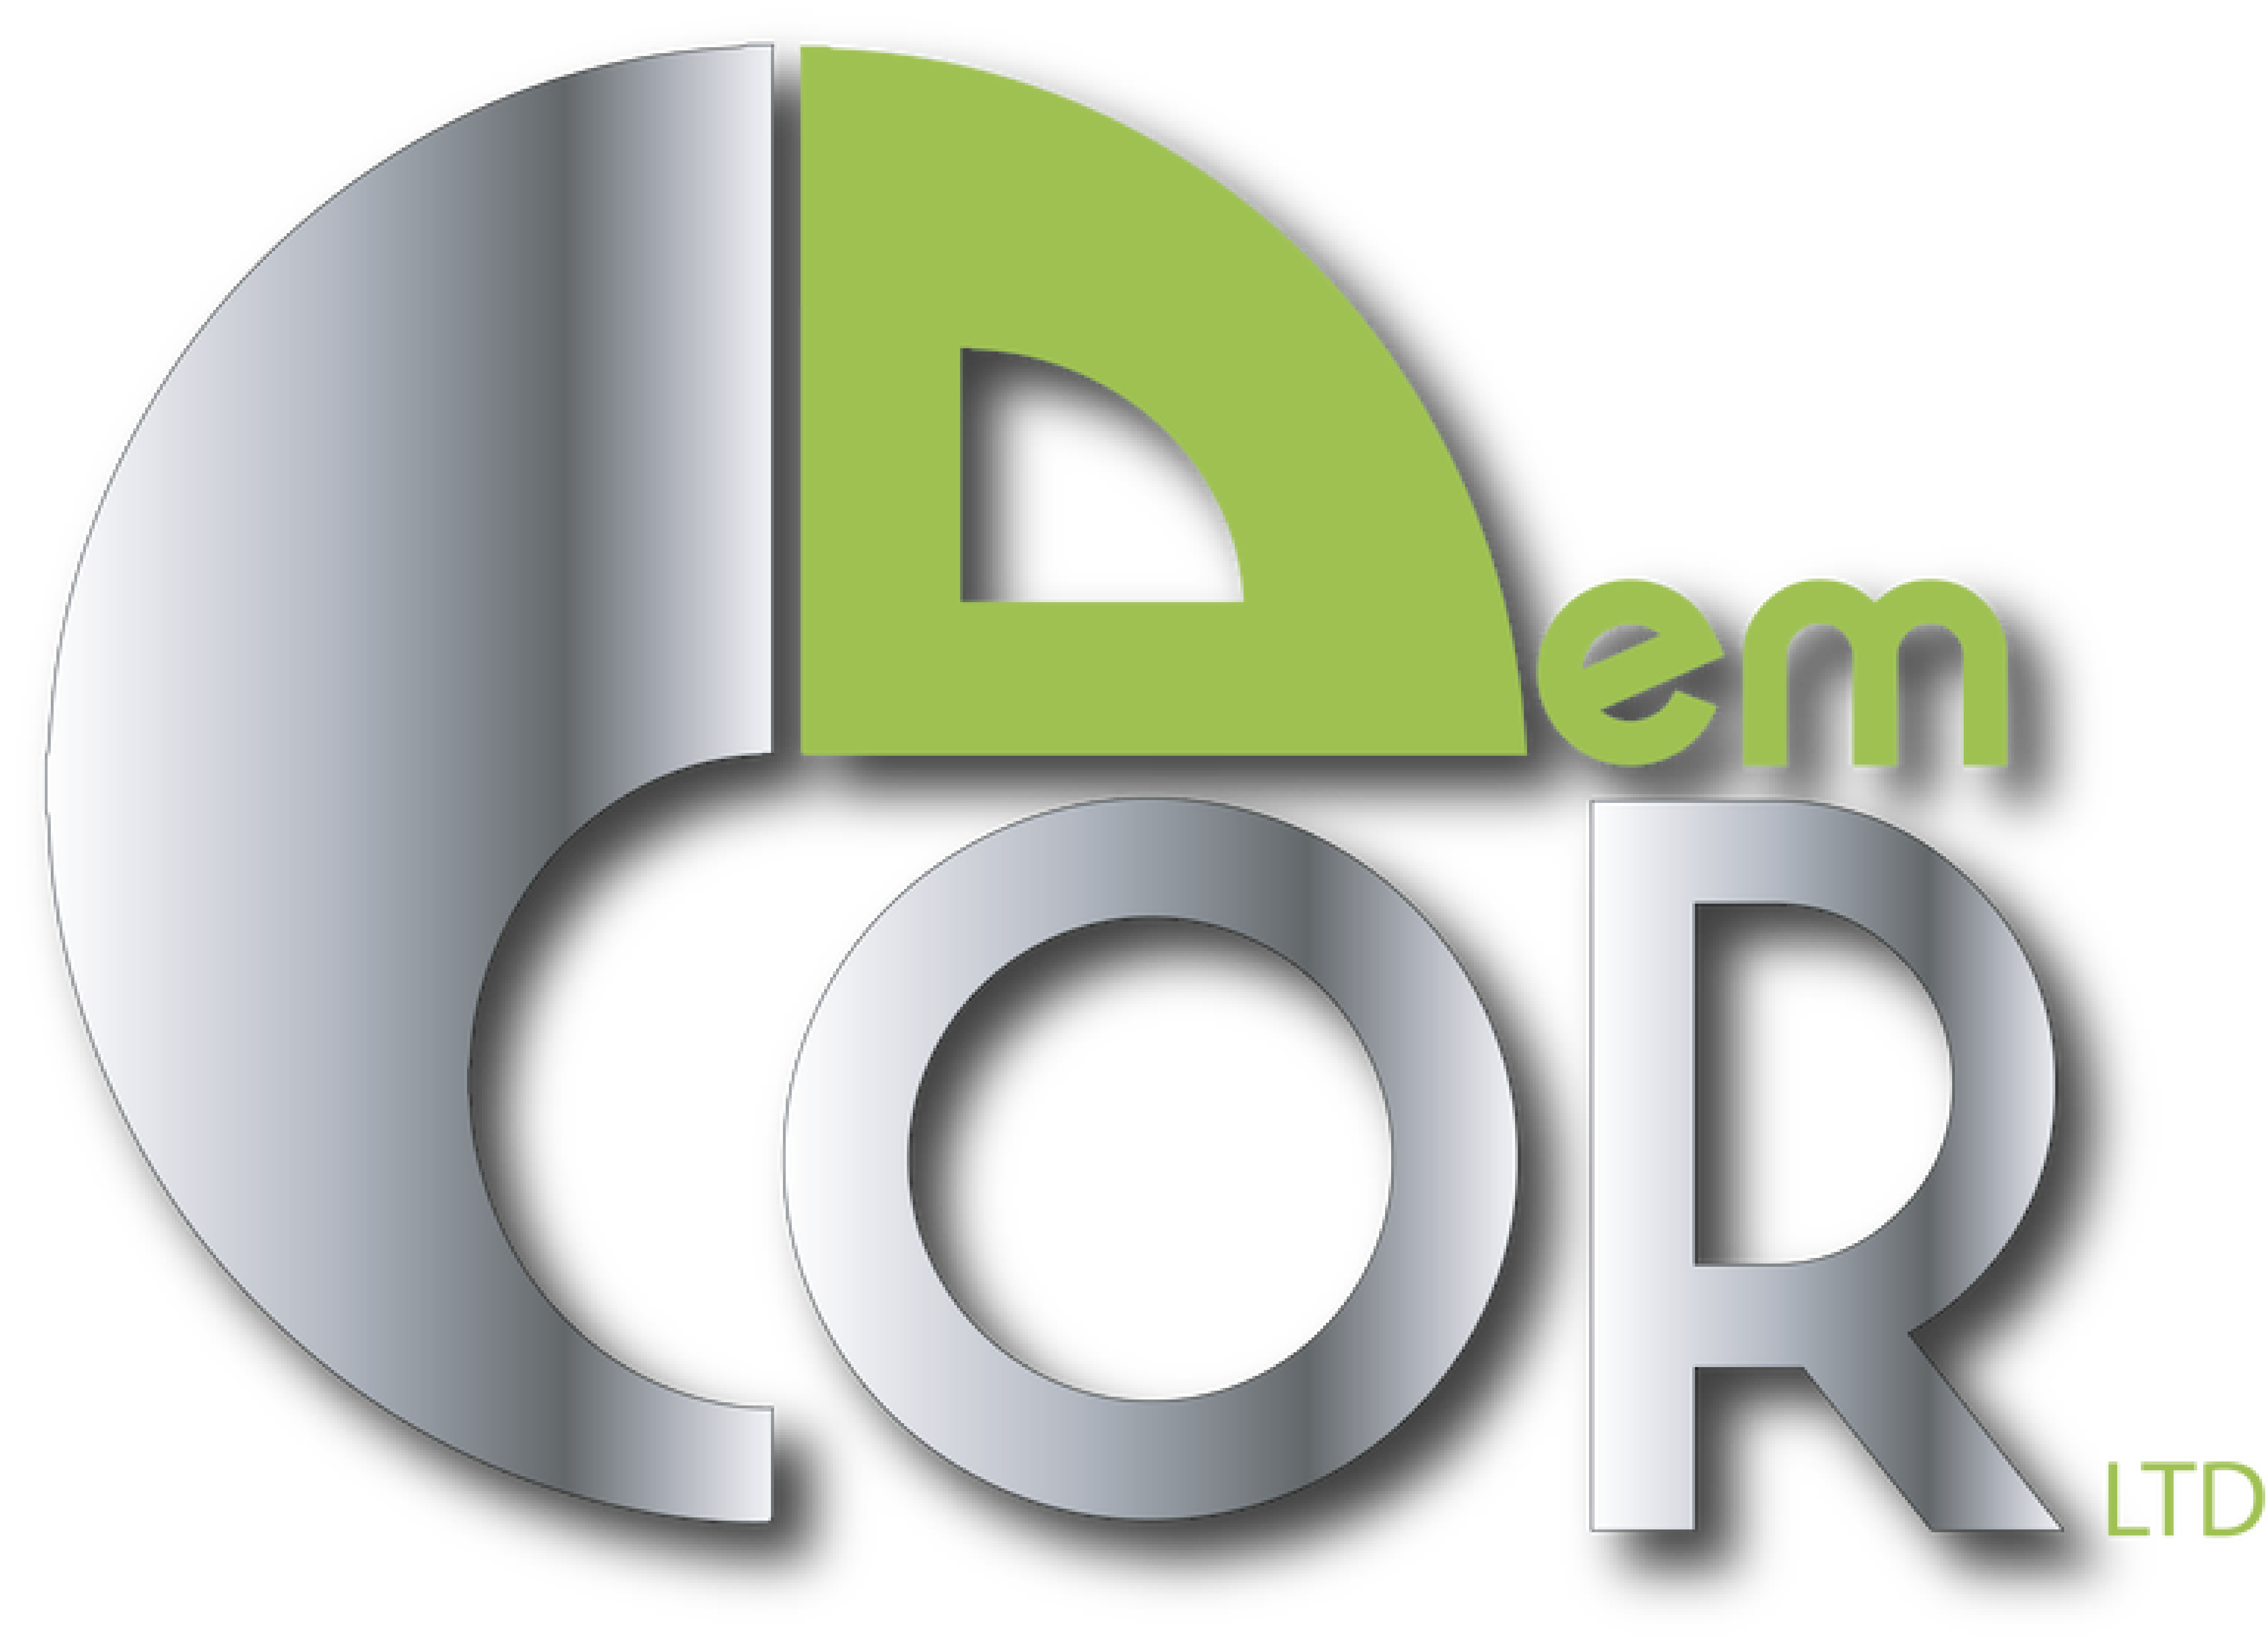 Demcor Ltd